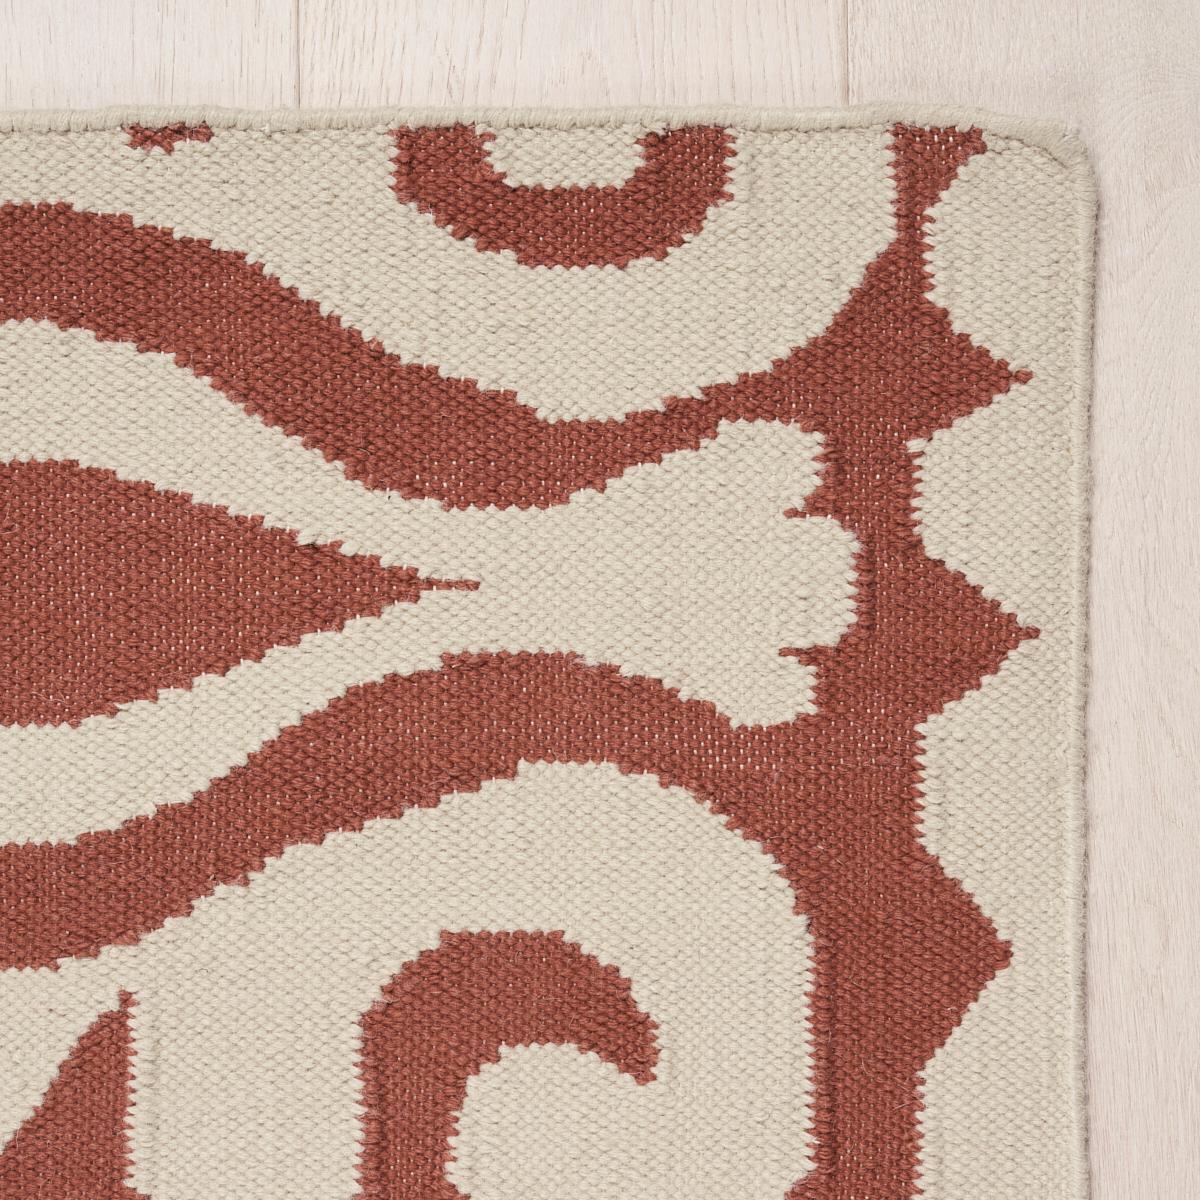 Inspiriert von indischen Motiven ist unser Seema Indoor/Outdoor Rug eine stilvolle Kombination aus geometrischen und abstrakten Elementen. Aus 100 % recyceltem PET hergestellt, sieht es aus wie Naturfasern und fühlt sich auch so an. Und es hält dem